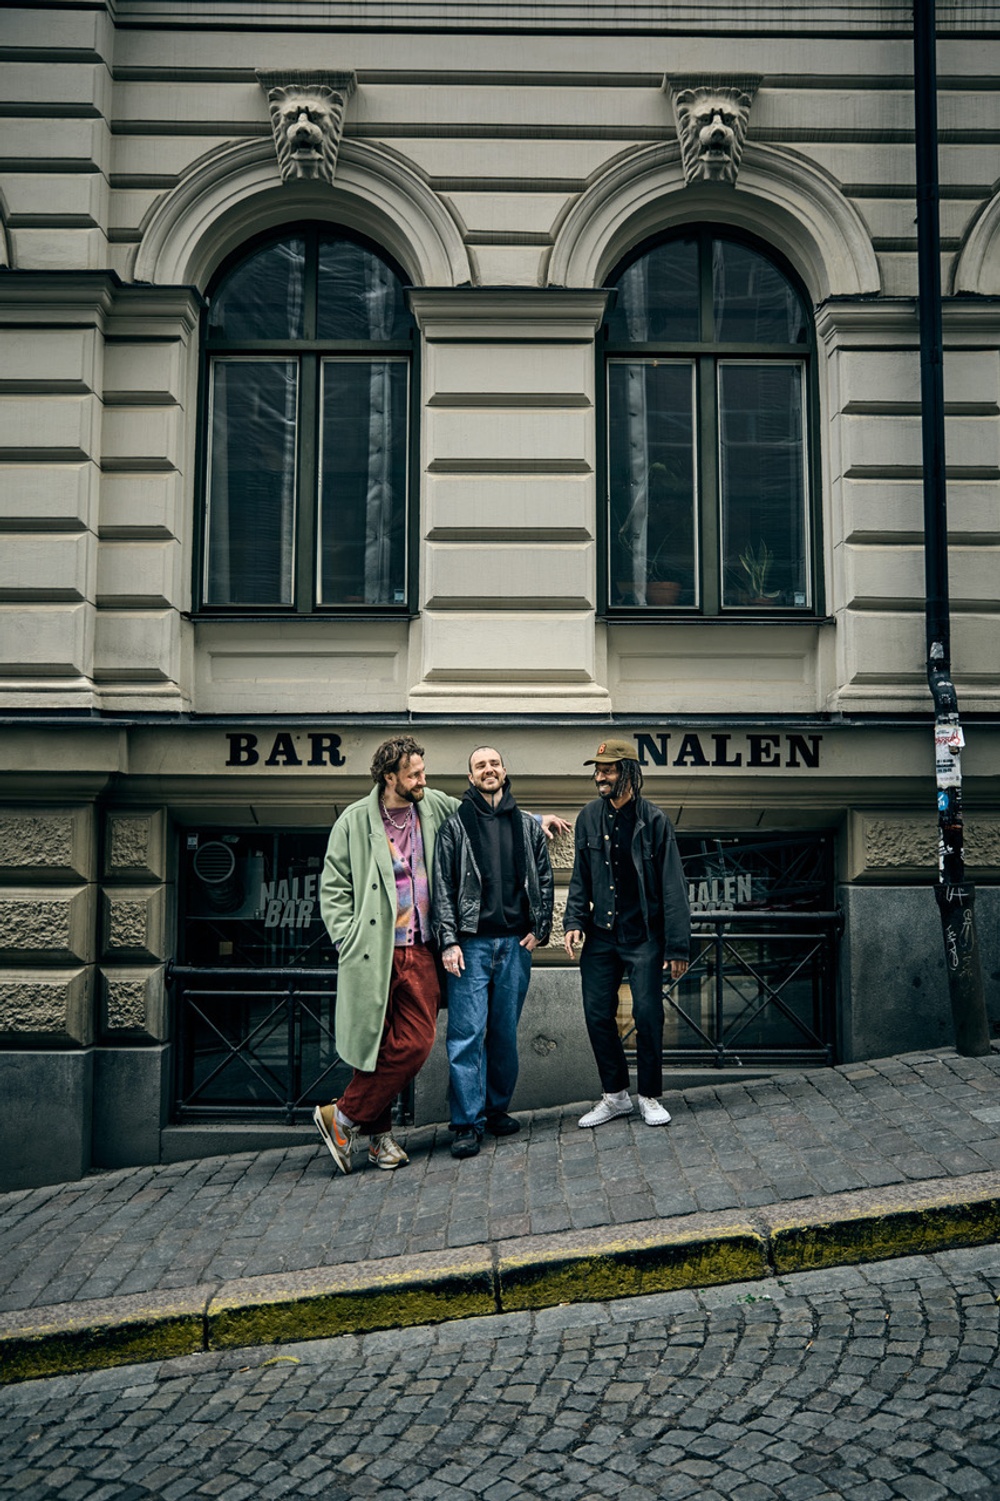 Markus Welin, Plato Mavrokostidis, Jaqe utanför bar soif på Nalen i Stockholm.